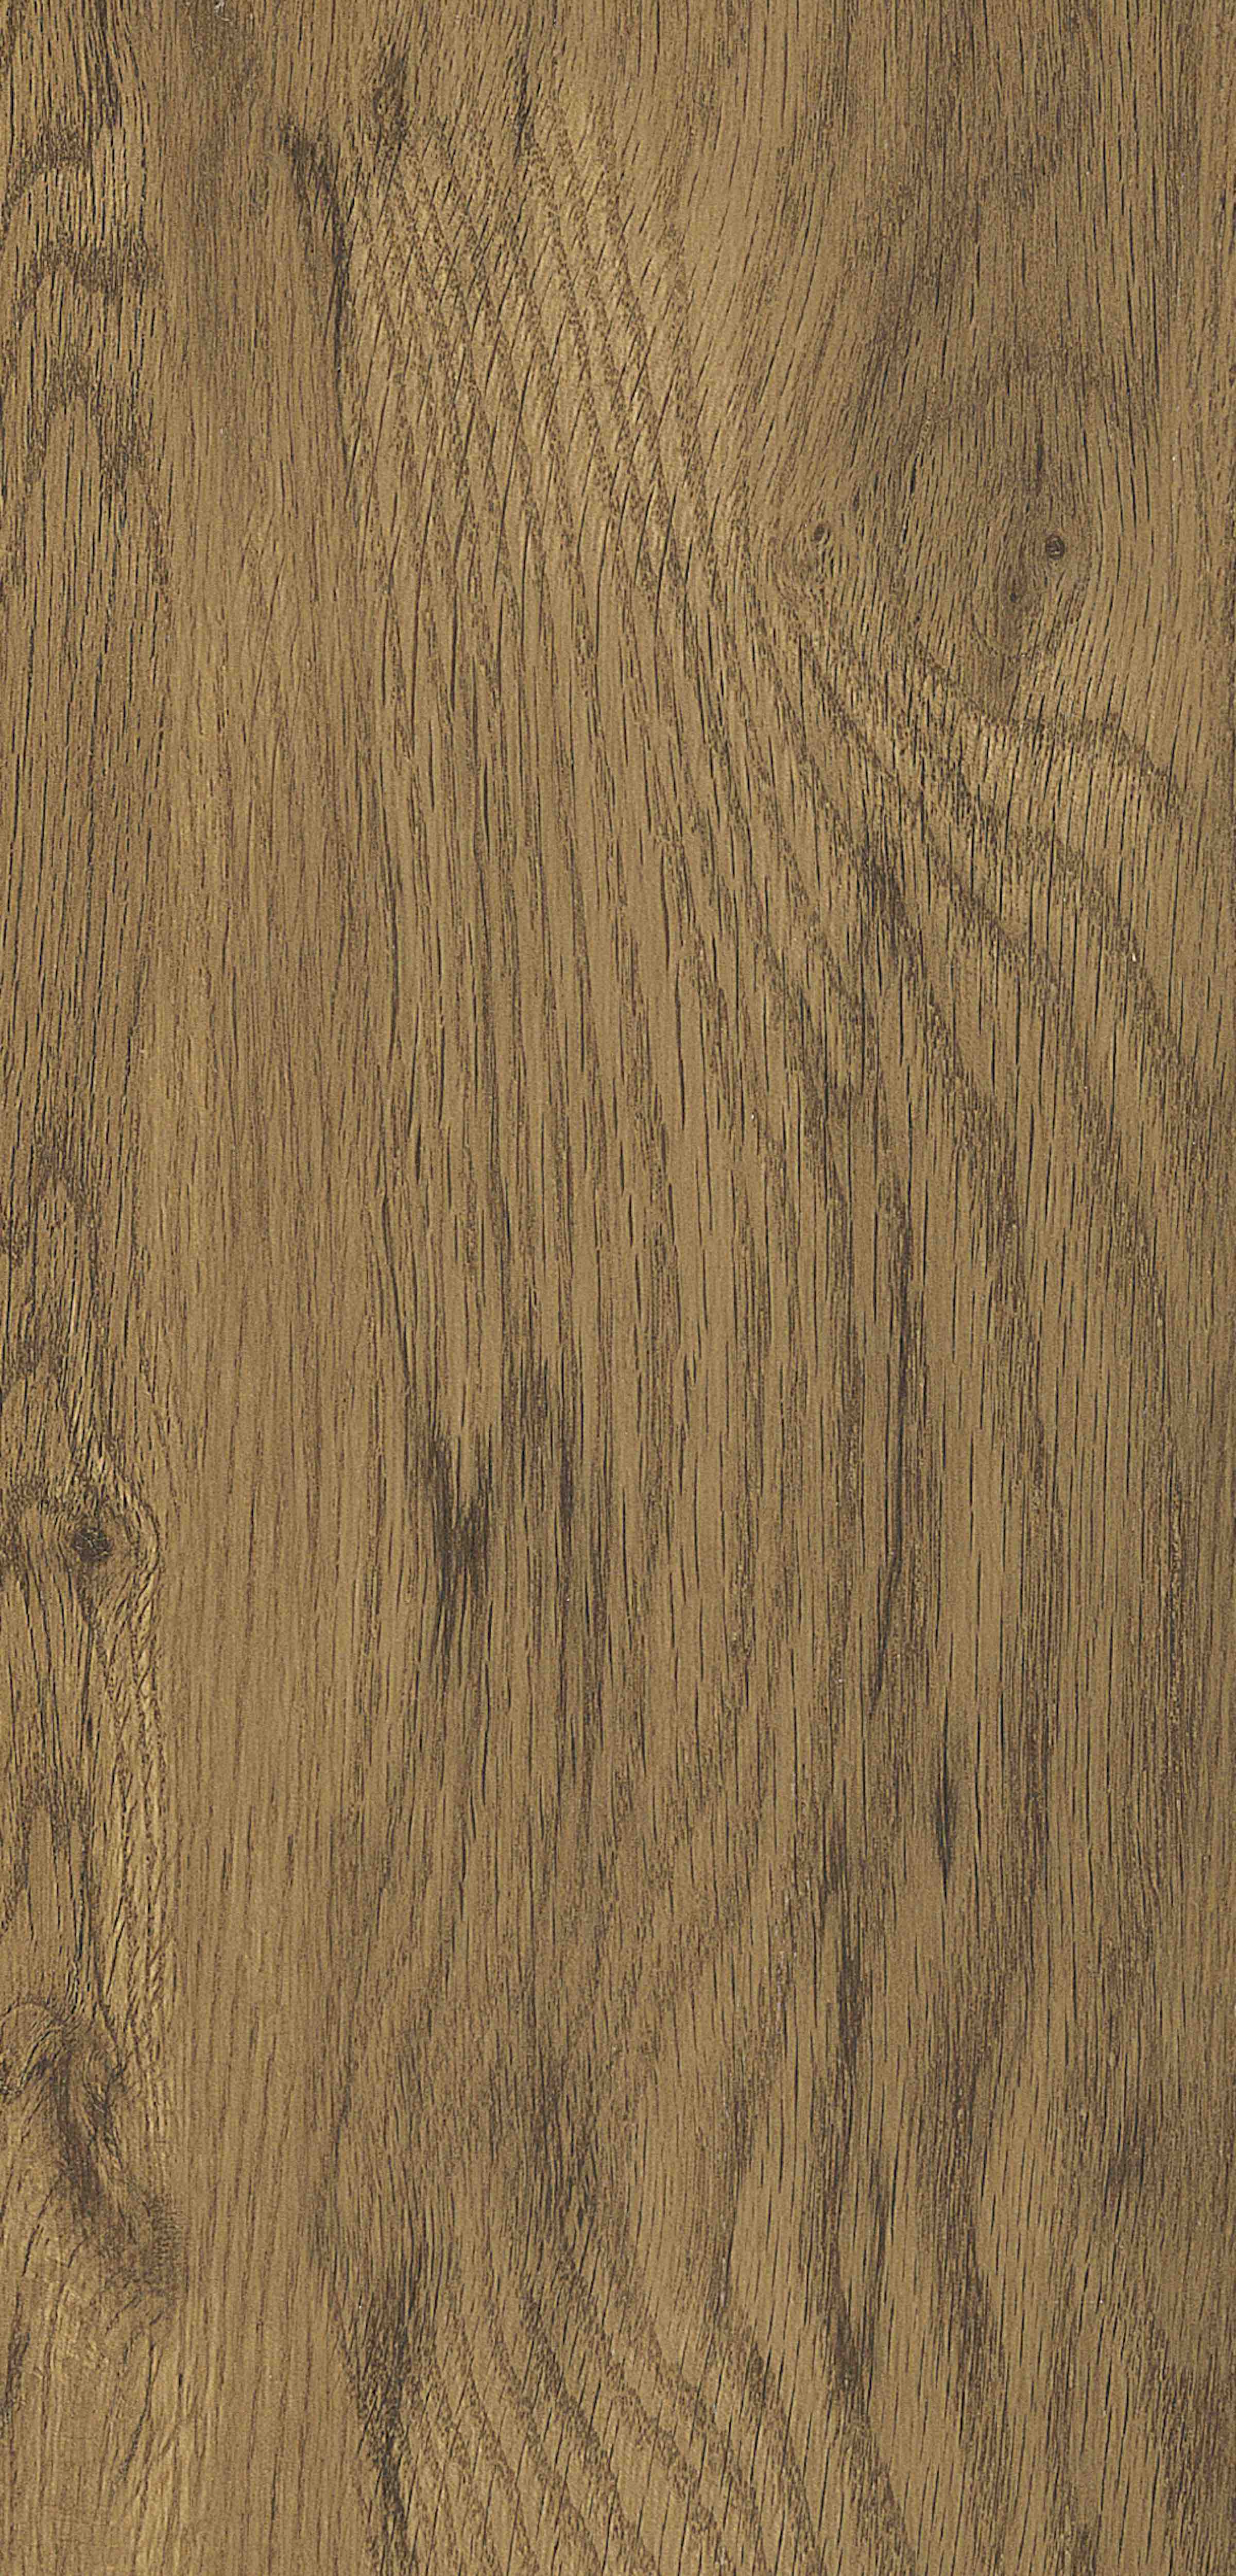 Duera | Edwardian Oak, 3131 | Paragon Carpet Tiles | Commercial Carpet Tiles